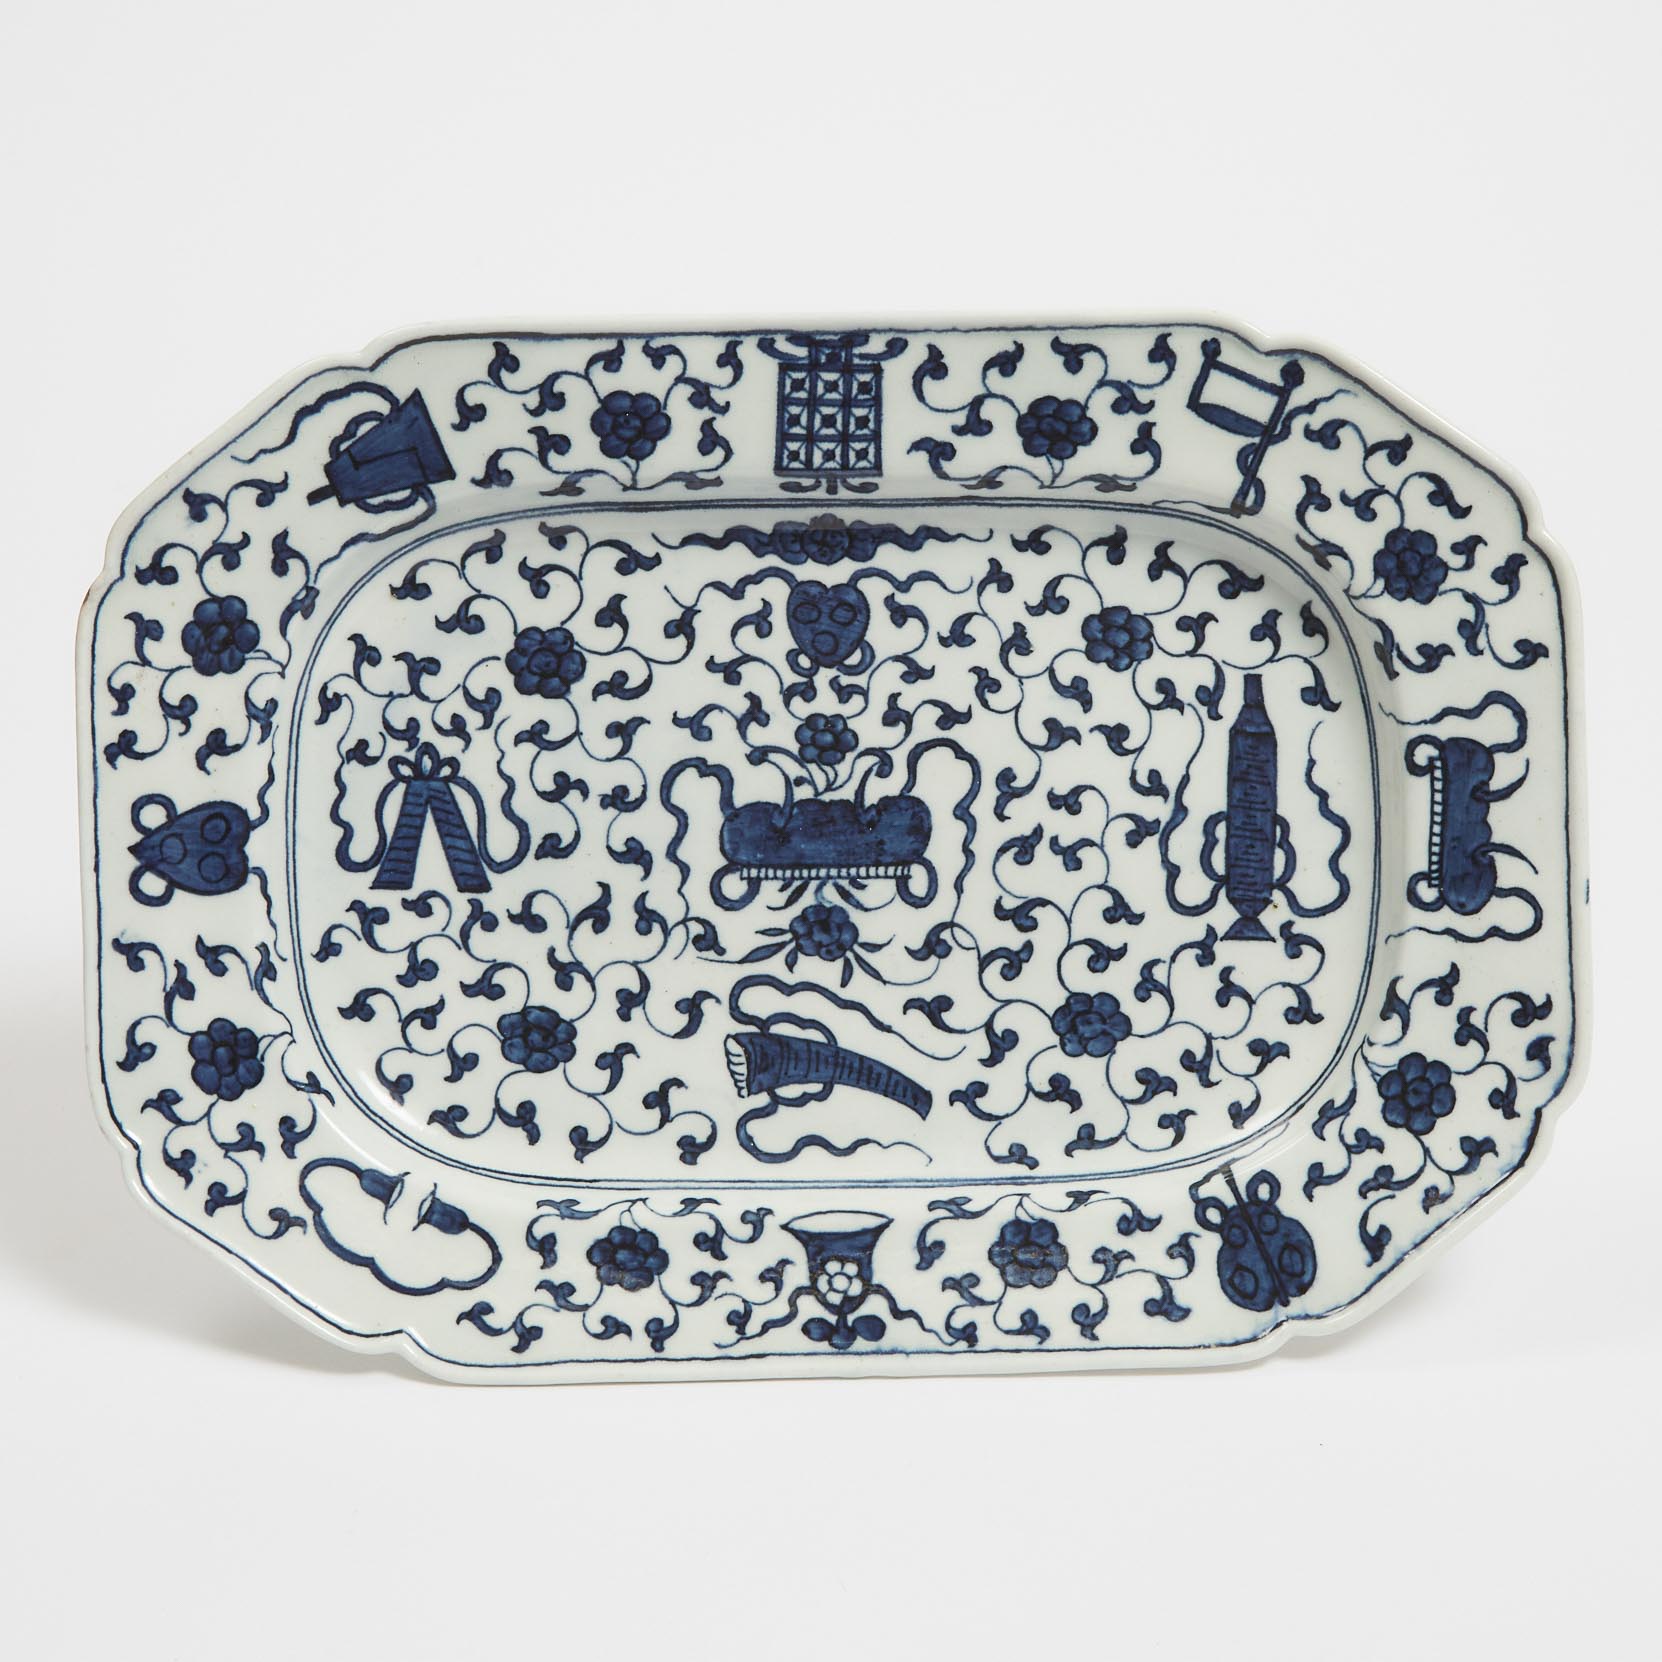 Worcester 'Hundred Antiques' Pattern Octagonal Platter, c.1770-80